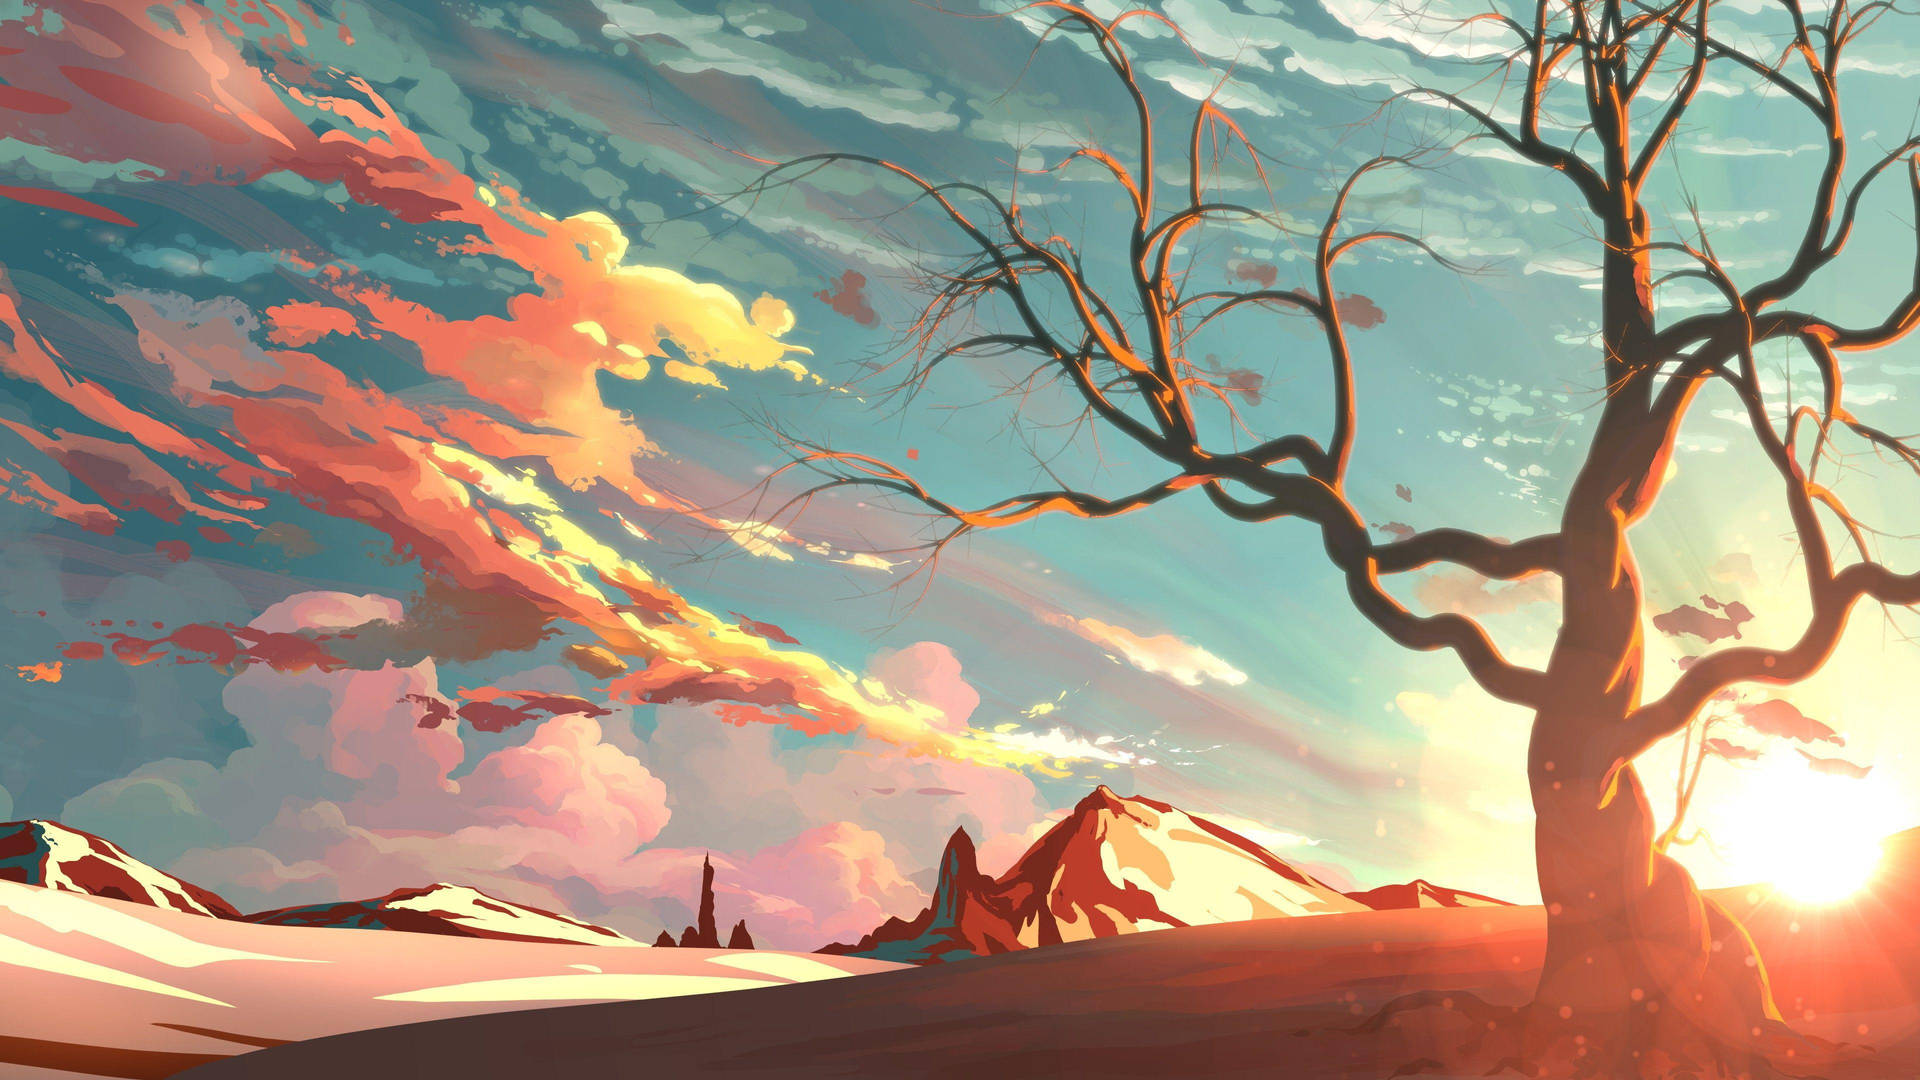 Dead Tree And Sunrise Digital Art Background